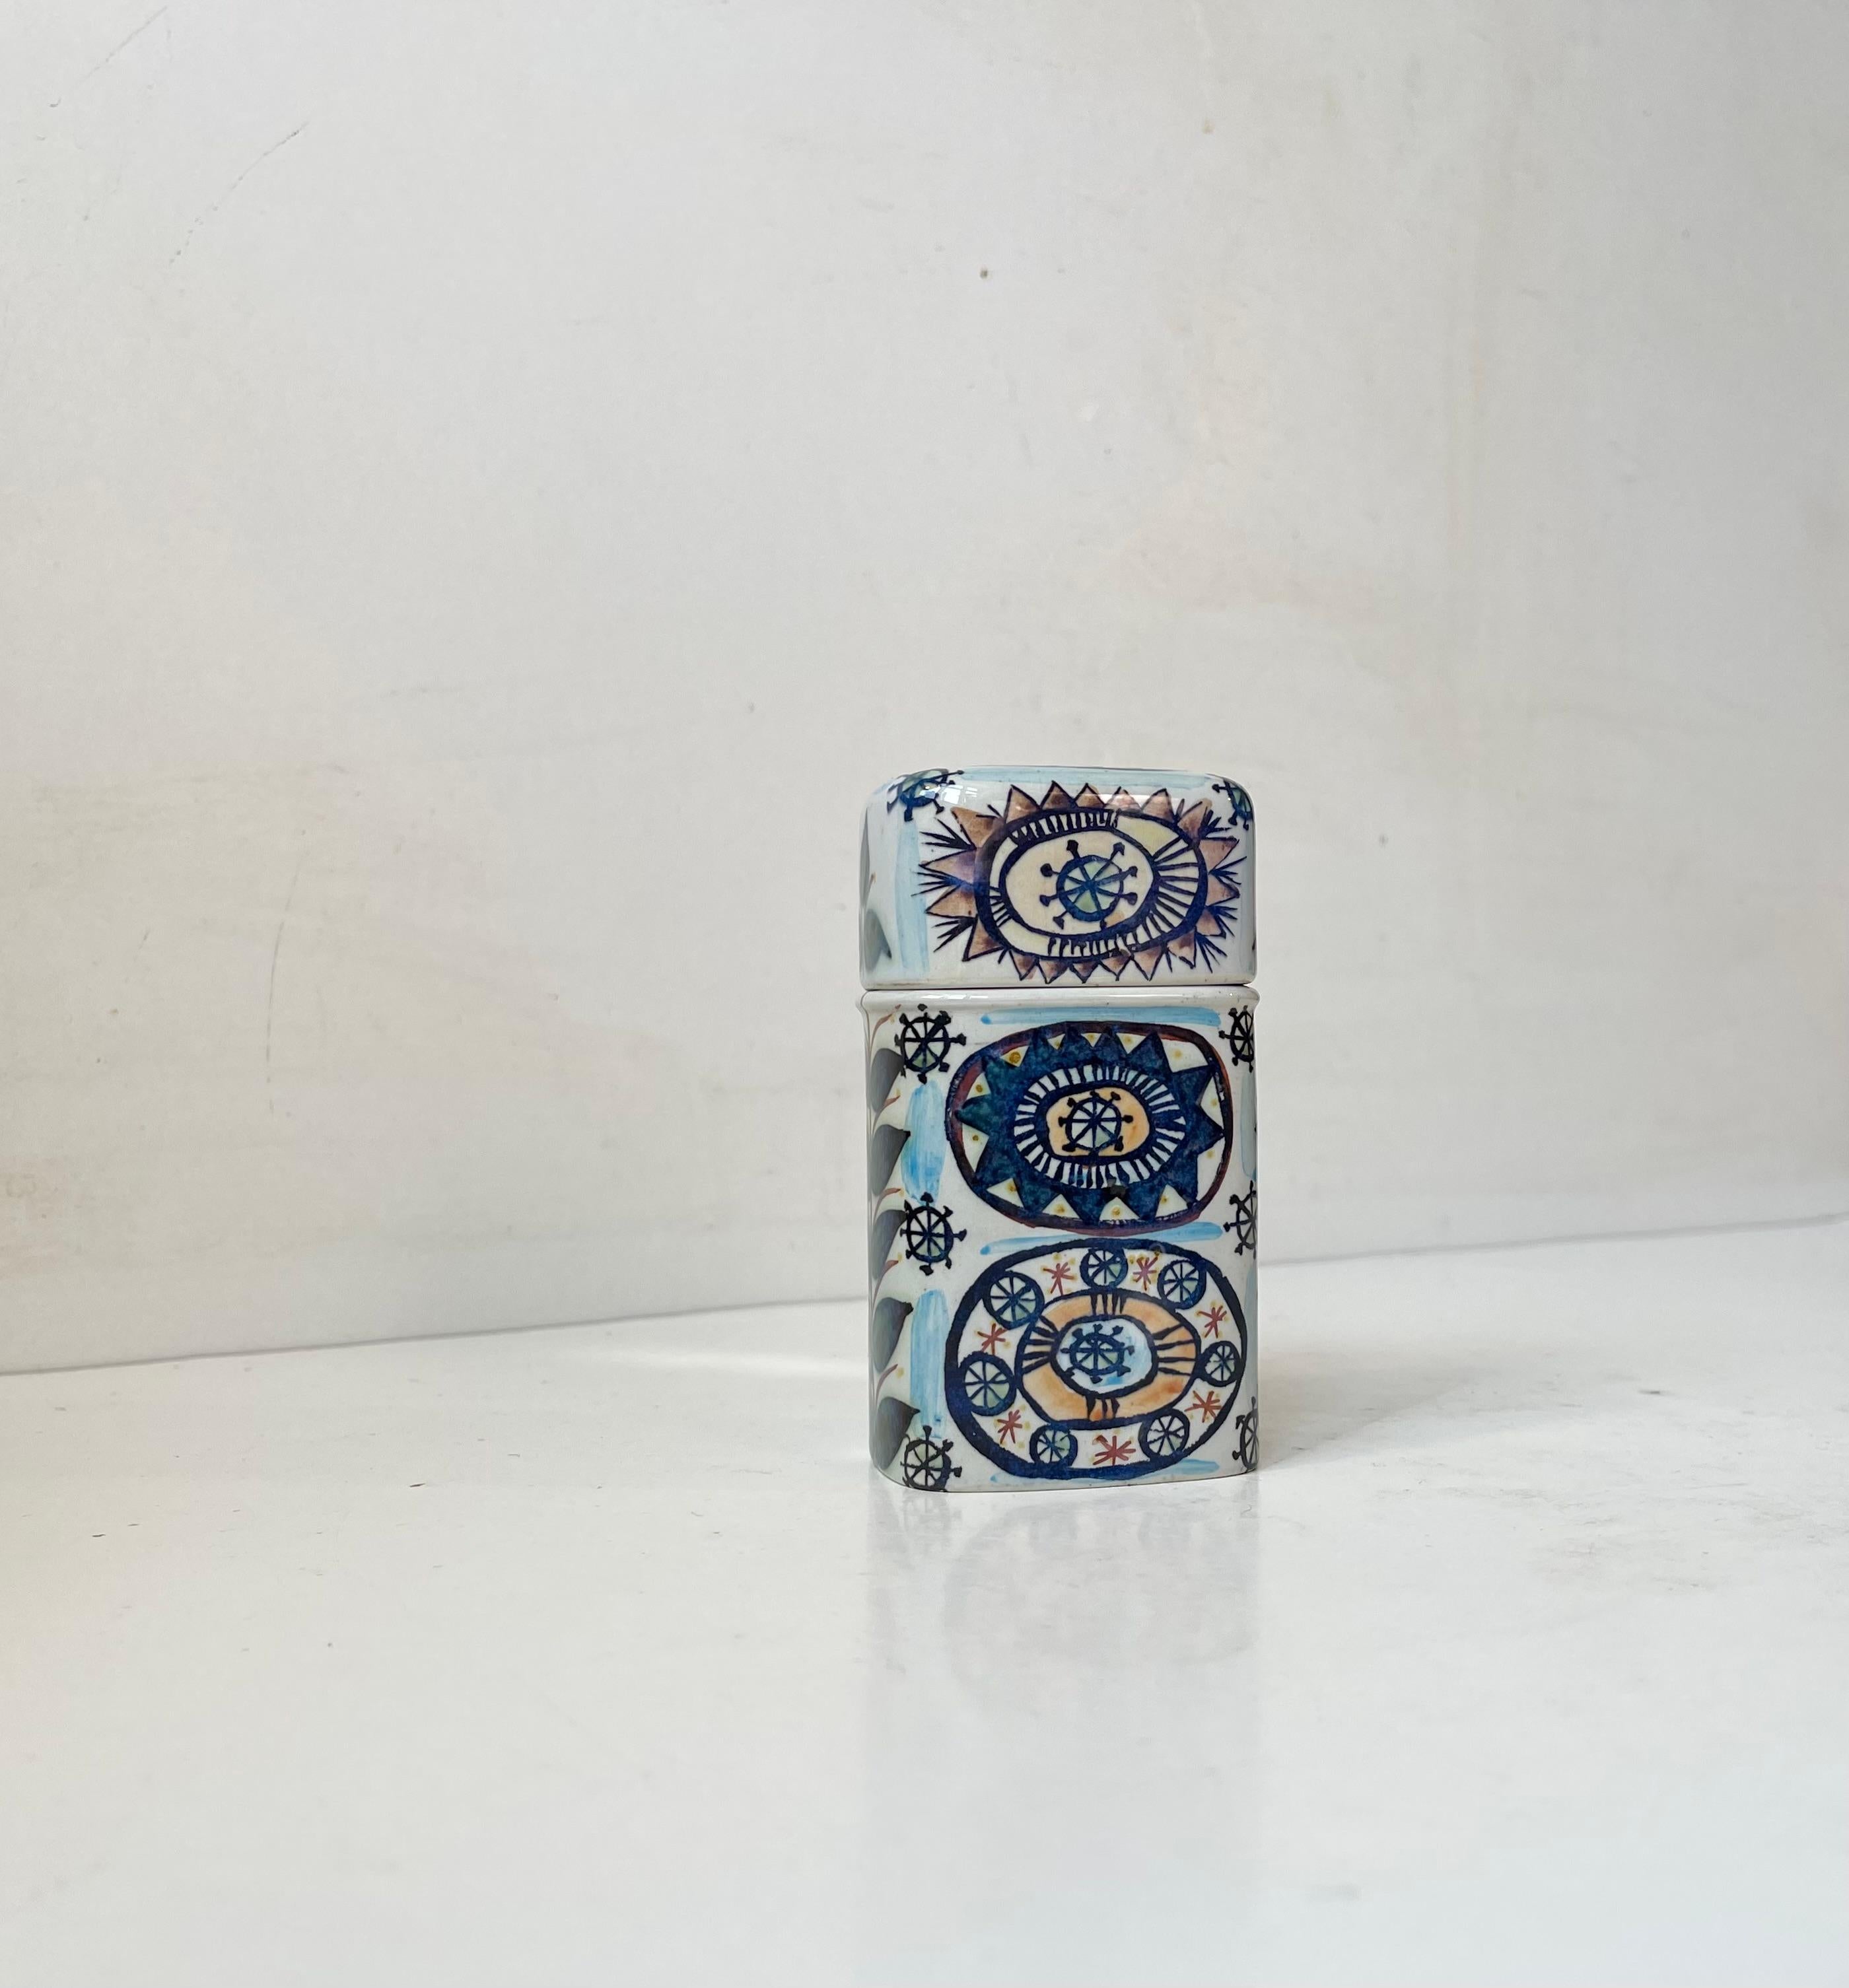 Rare pot à cigarettes/trinket de Royal Copenhagen en faïence décoré par l'artiste/designer norvégienne Marianne Johnson. Il est décoré sur tous les côtés et sa base est légèrement inclinée pour faciliter l'accès à vos cigarettes. Conçu et fabriqué